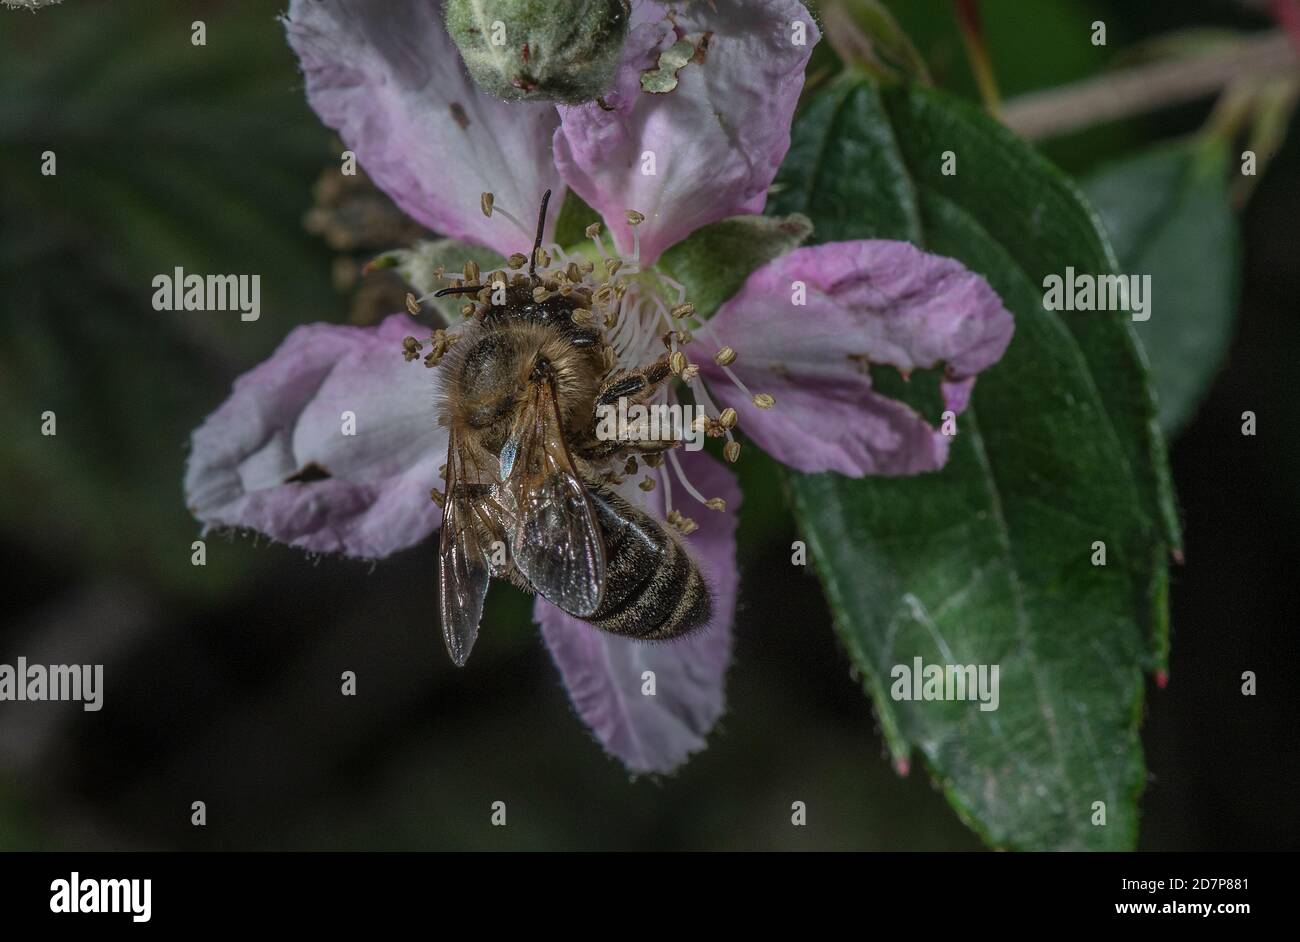 Europäische dunkle Biene, APIs mellifera mellifera, eine Unterart der westlichen Honigbiene, die sich von rosa Bramble-Blüten ernährt. New Forest. Stockfoto